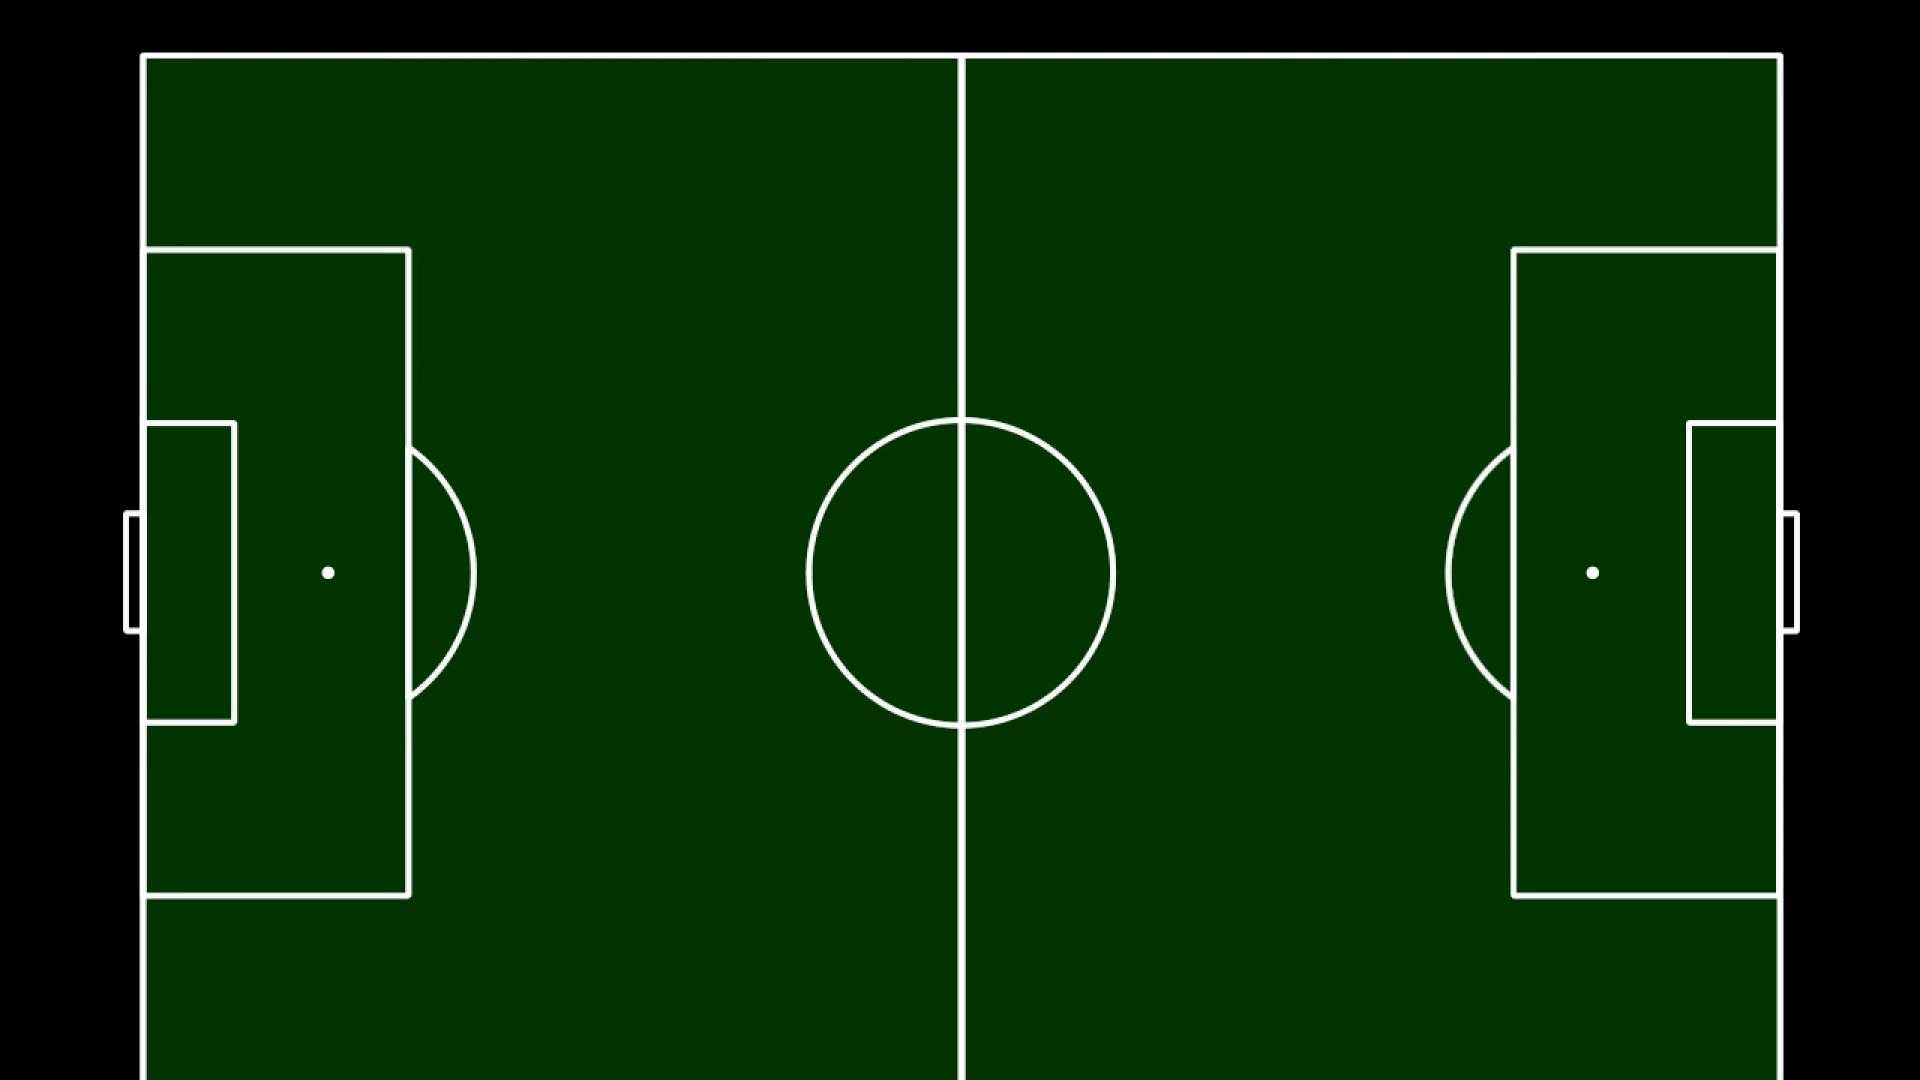 Free Blank Soccer Field Diagram, Download Free Clip Art Regarding Blank Football Field Template